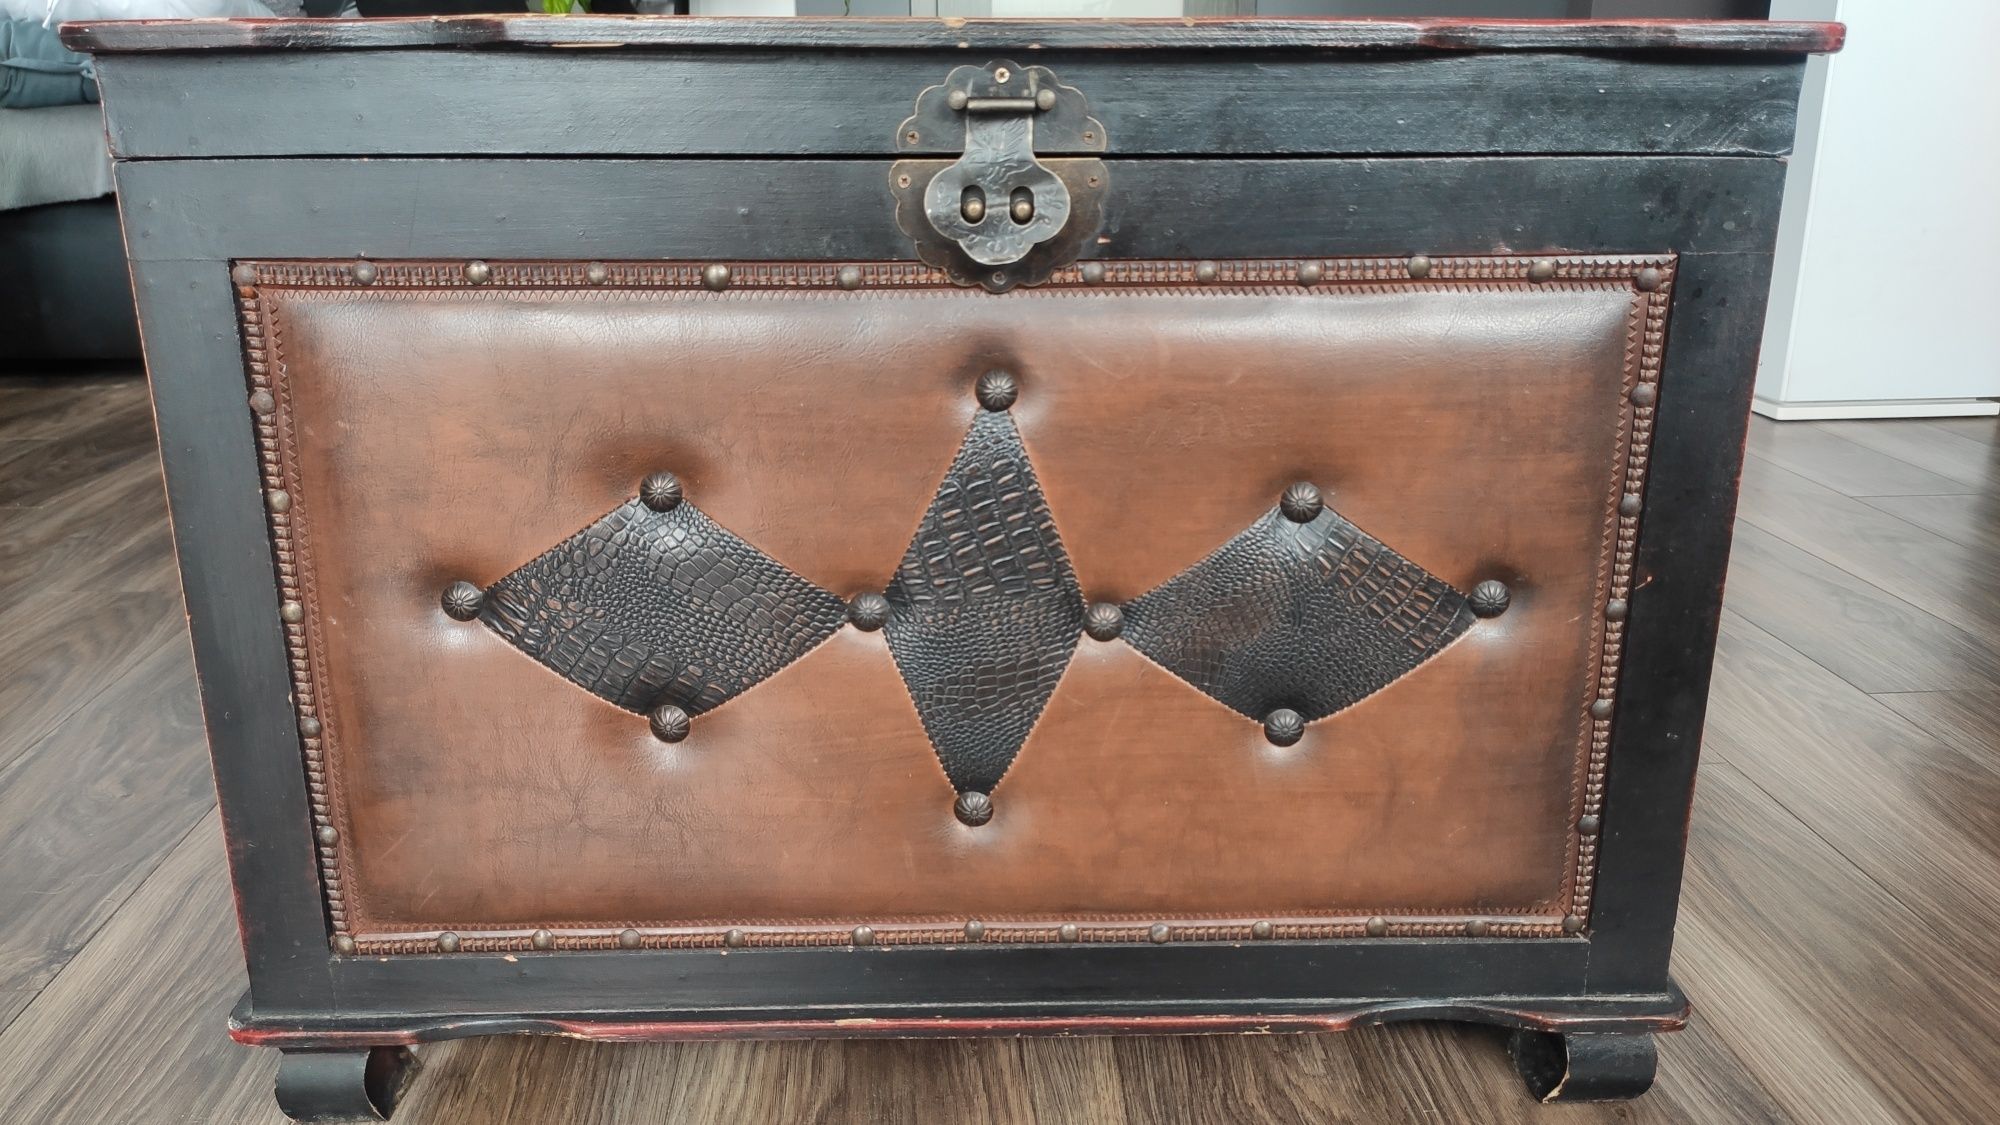 Skrzynia kufer stylizowana pikowana drewniana siedzisko